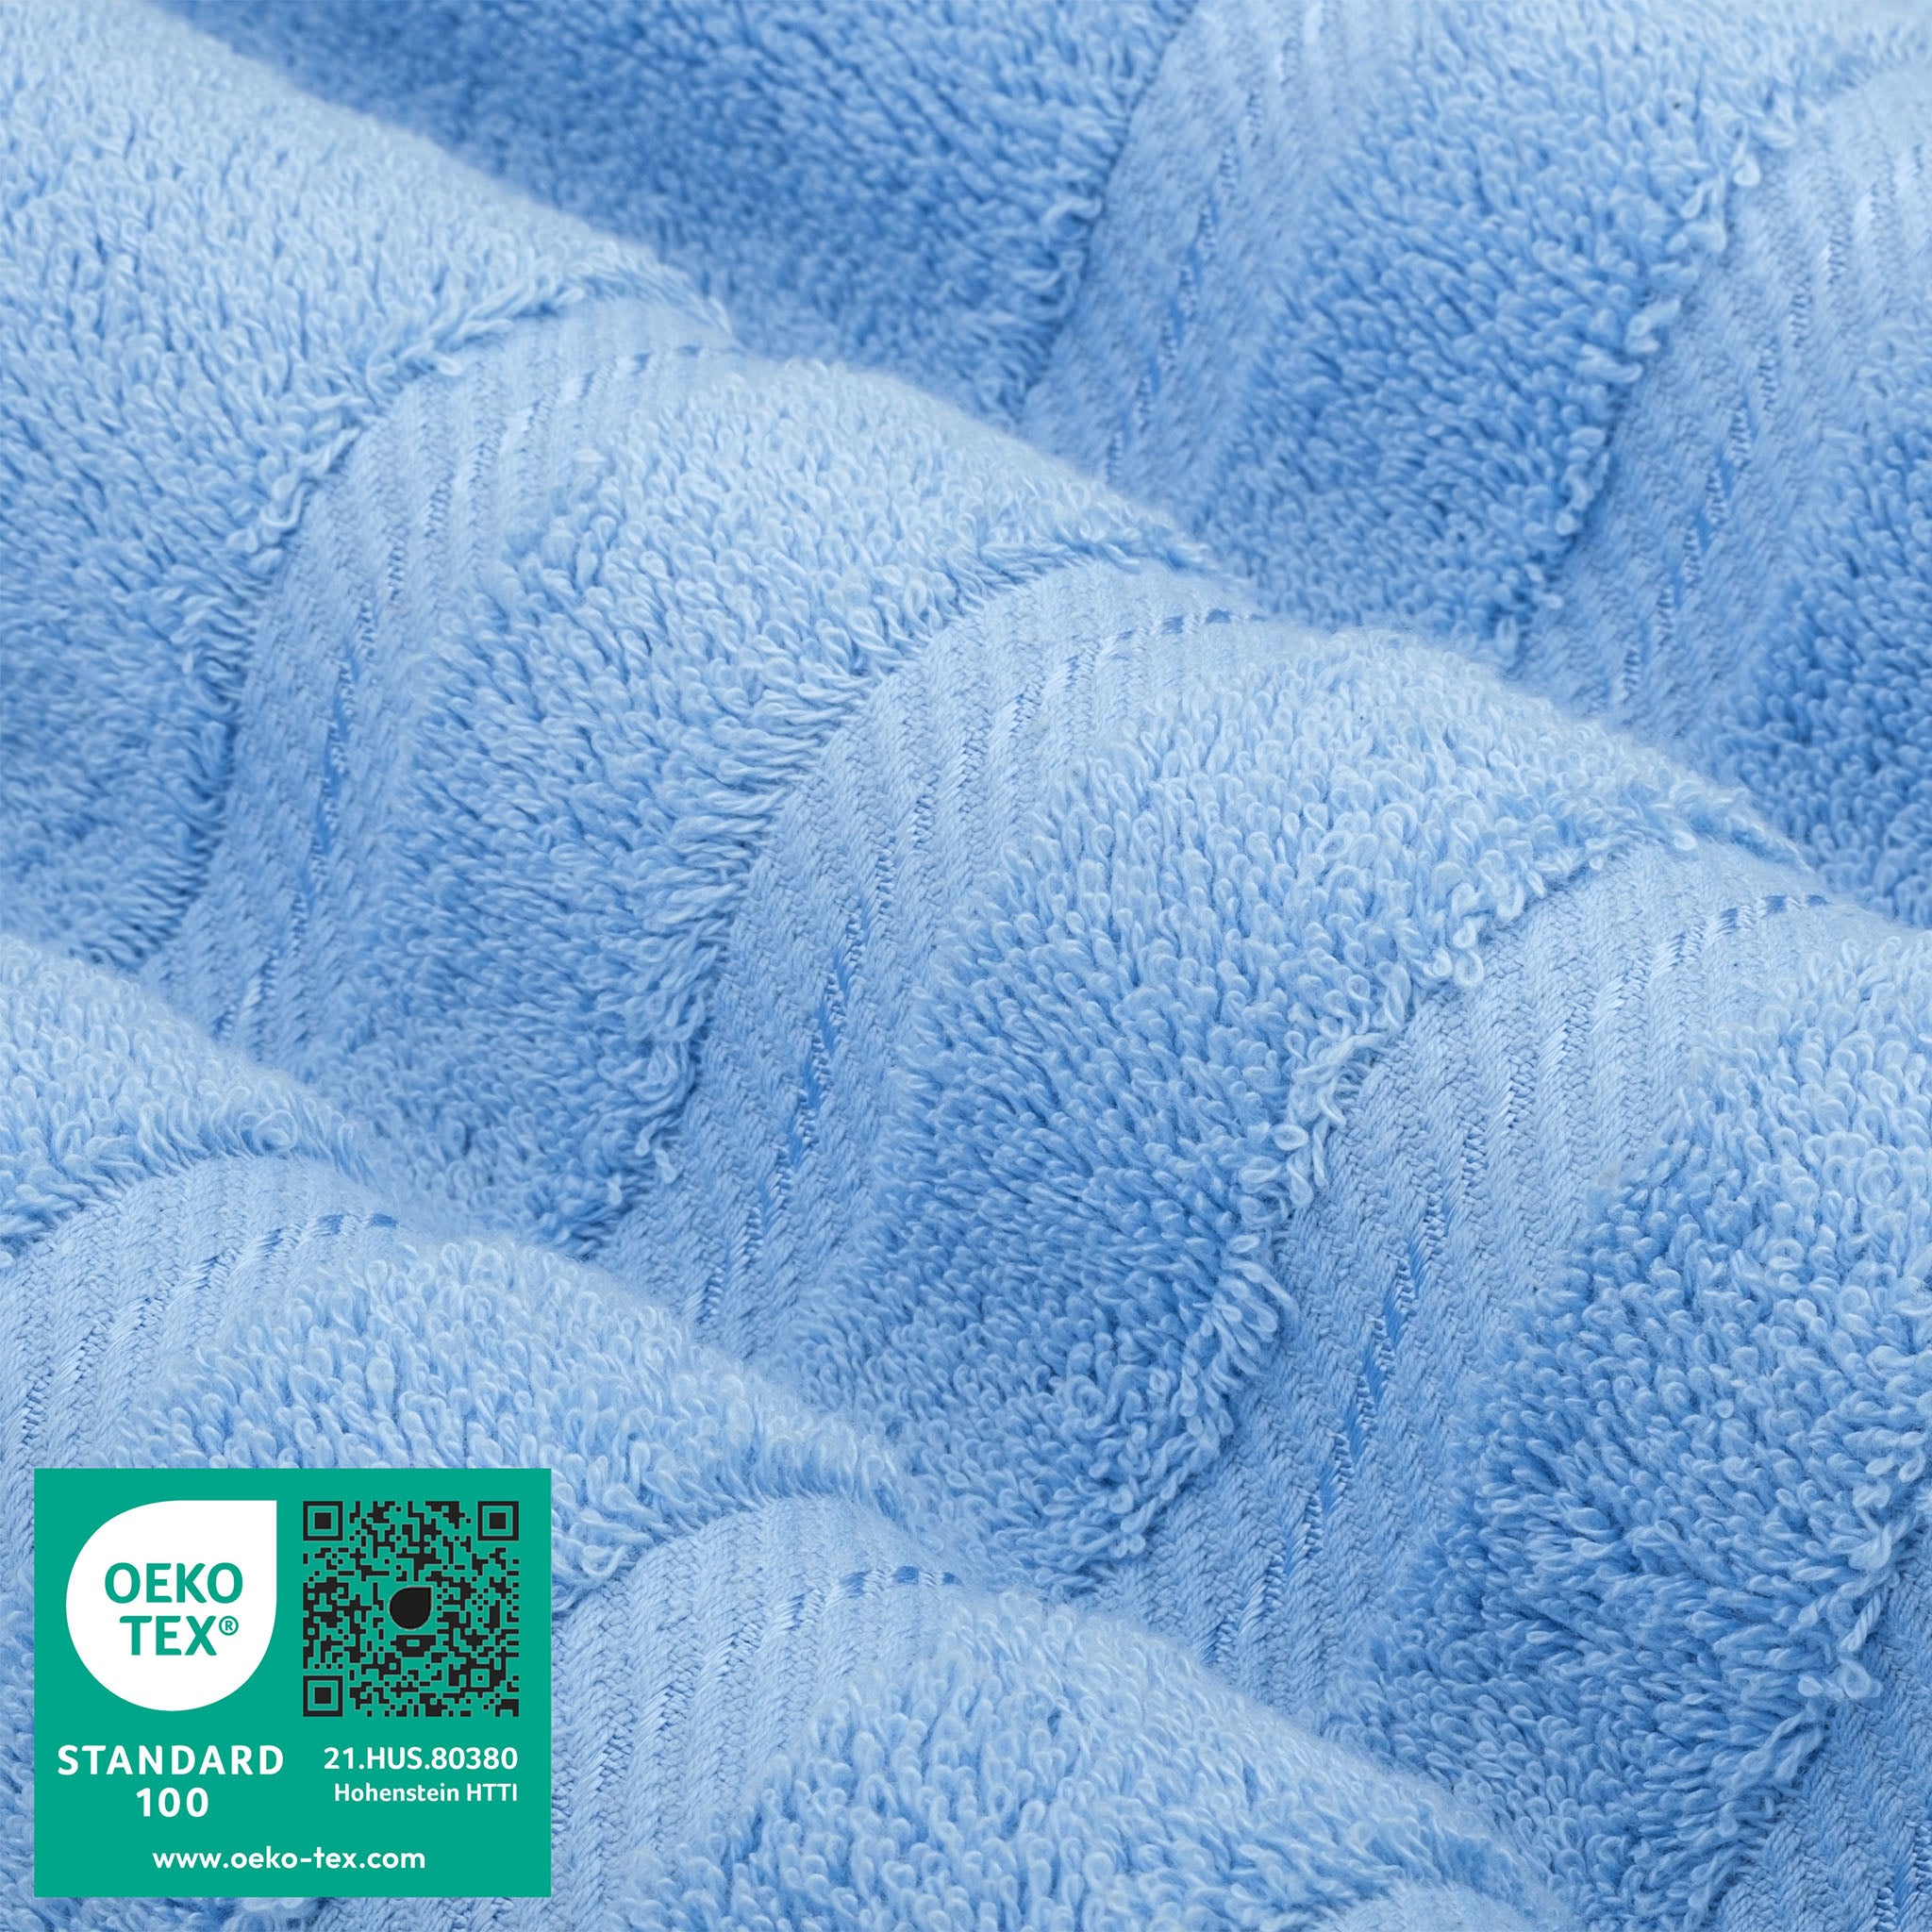 American Soft Linen 100% Turkish Cotton 4 Pack Bath Towel Set Wholesale sky-blue-3